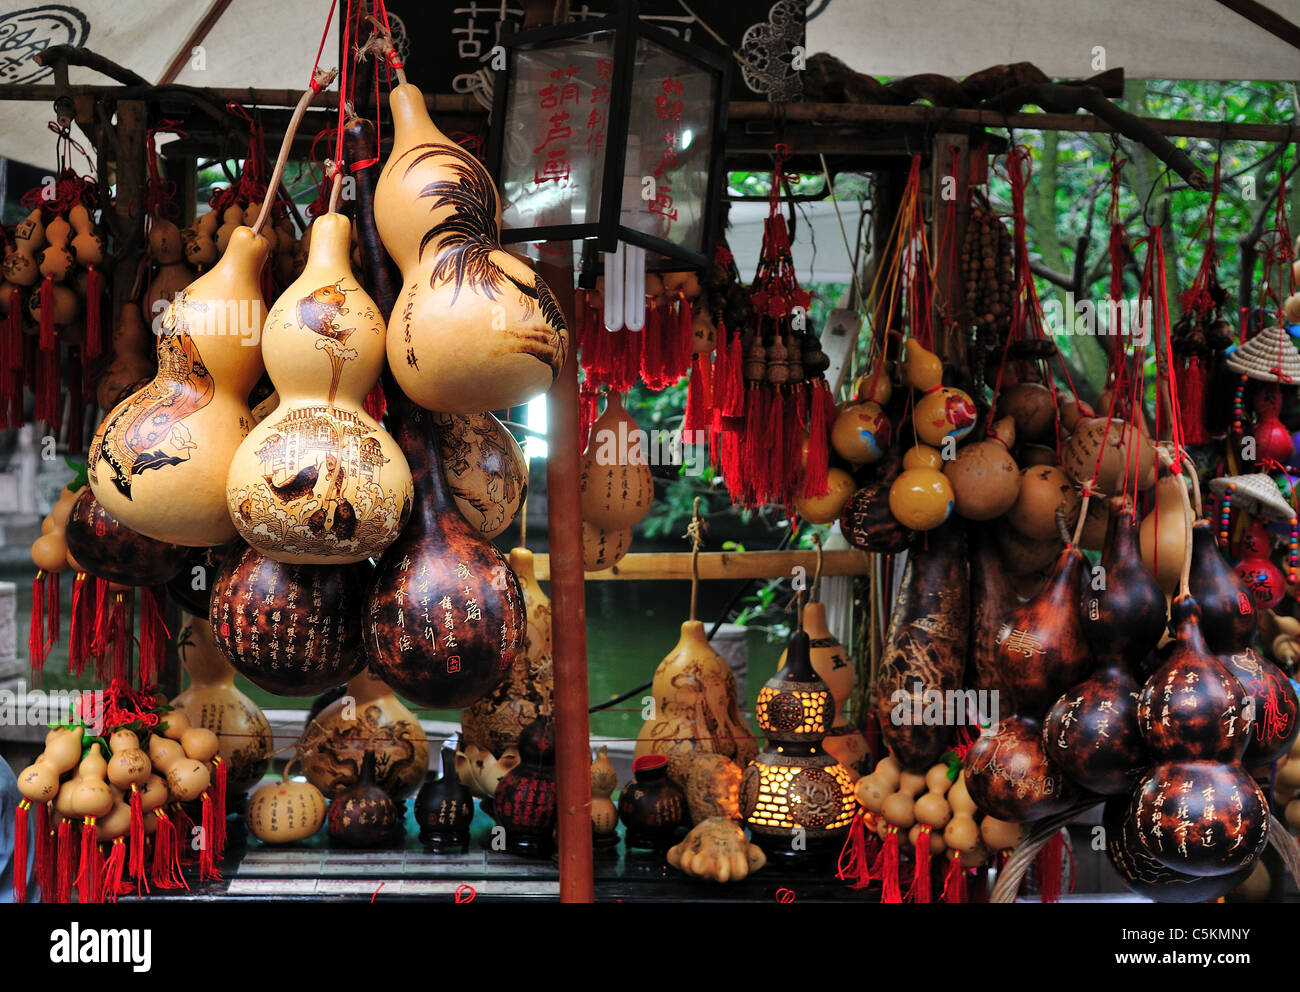 Zucche con pittura artistica per la vendita su un cavalletto. Chengdu Sichuan, in Cina. Foto Stock